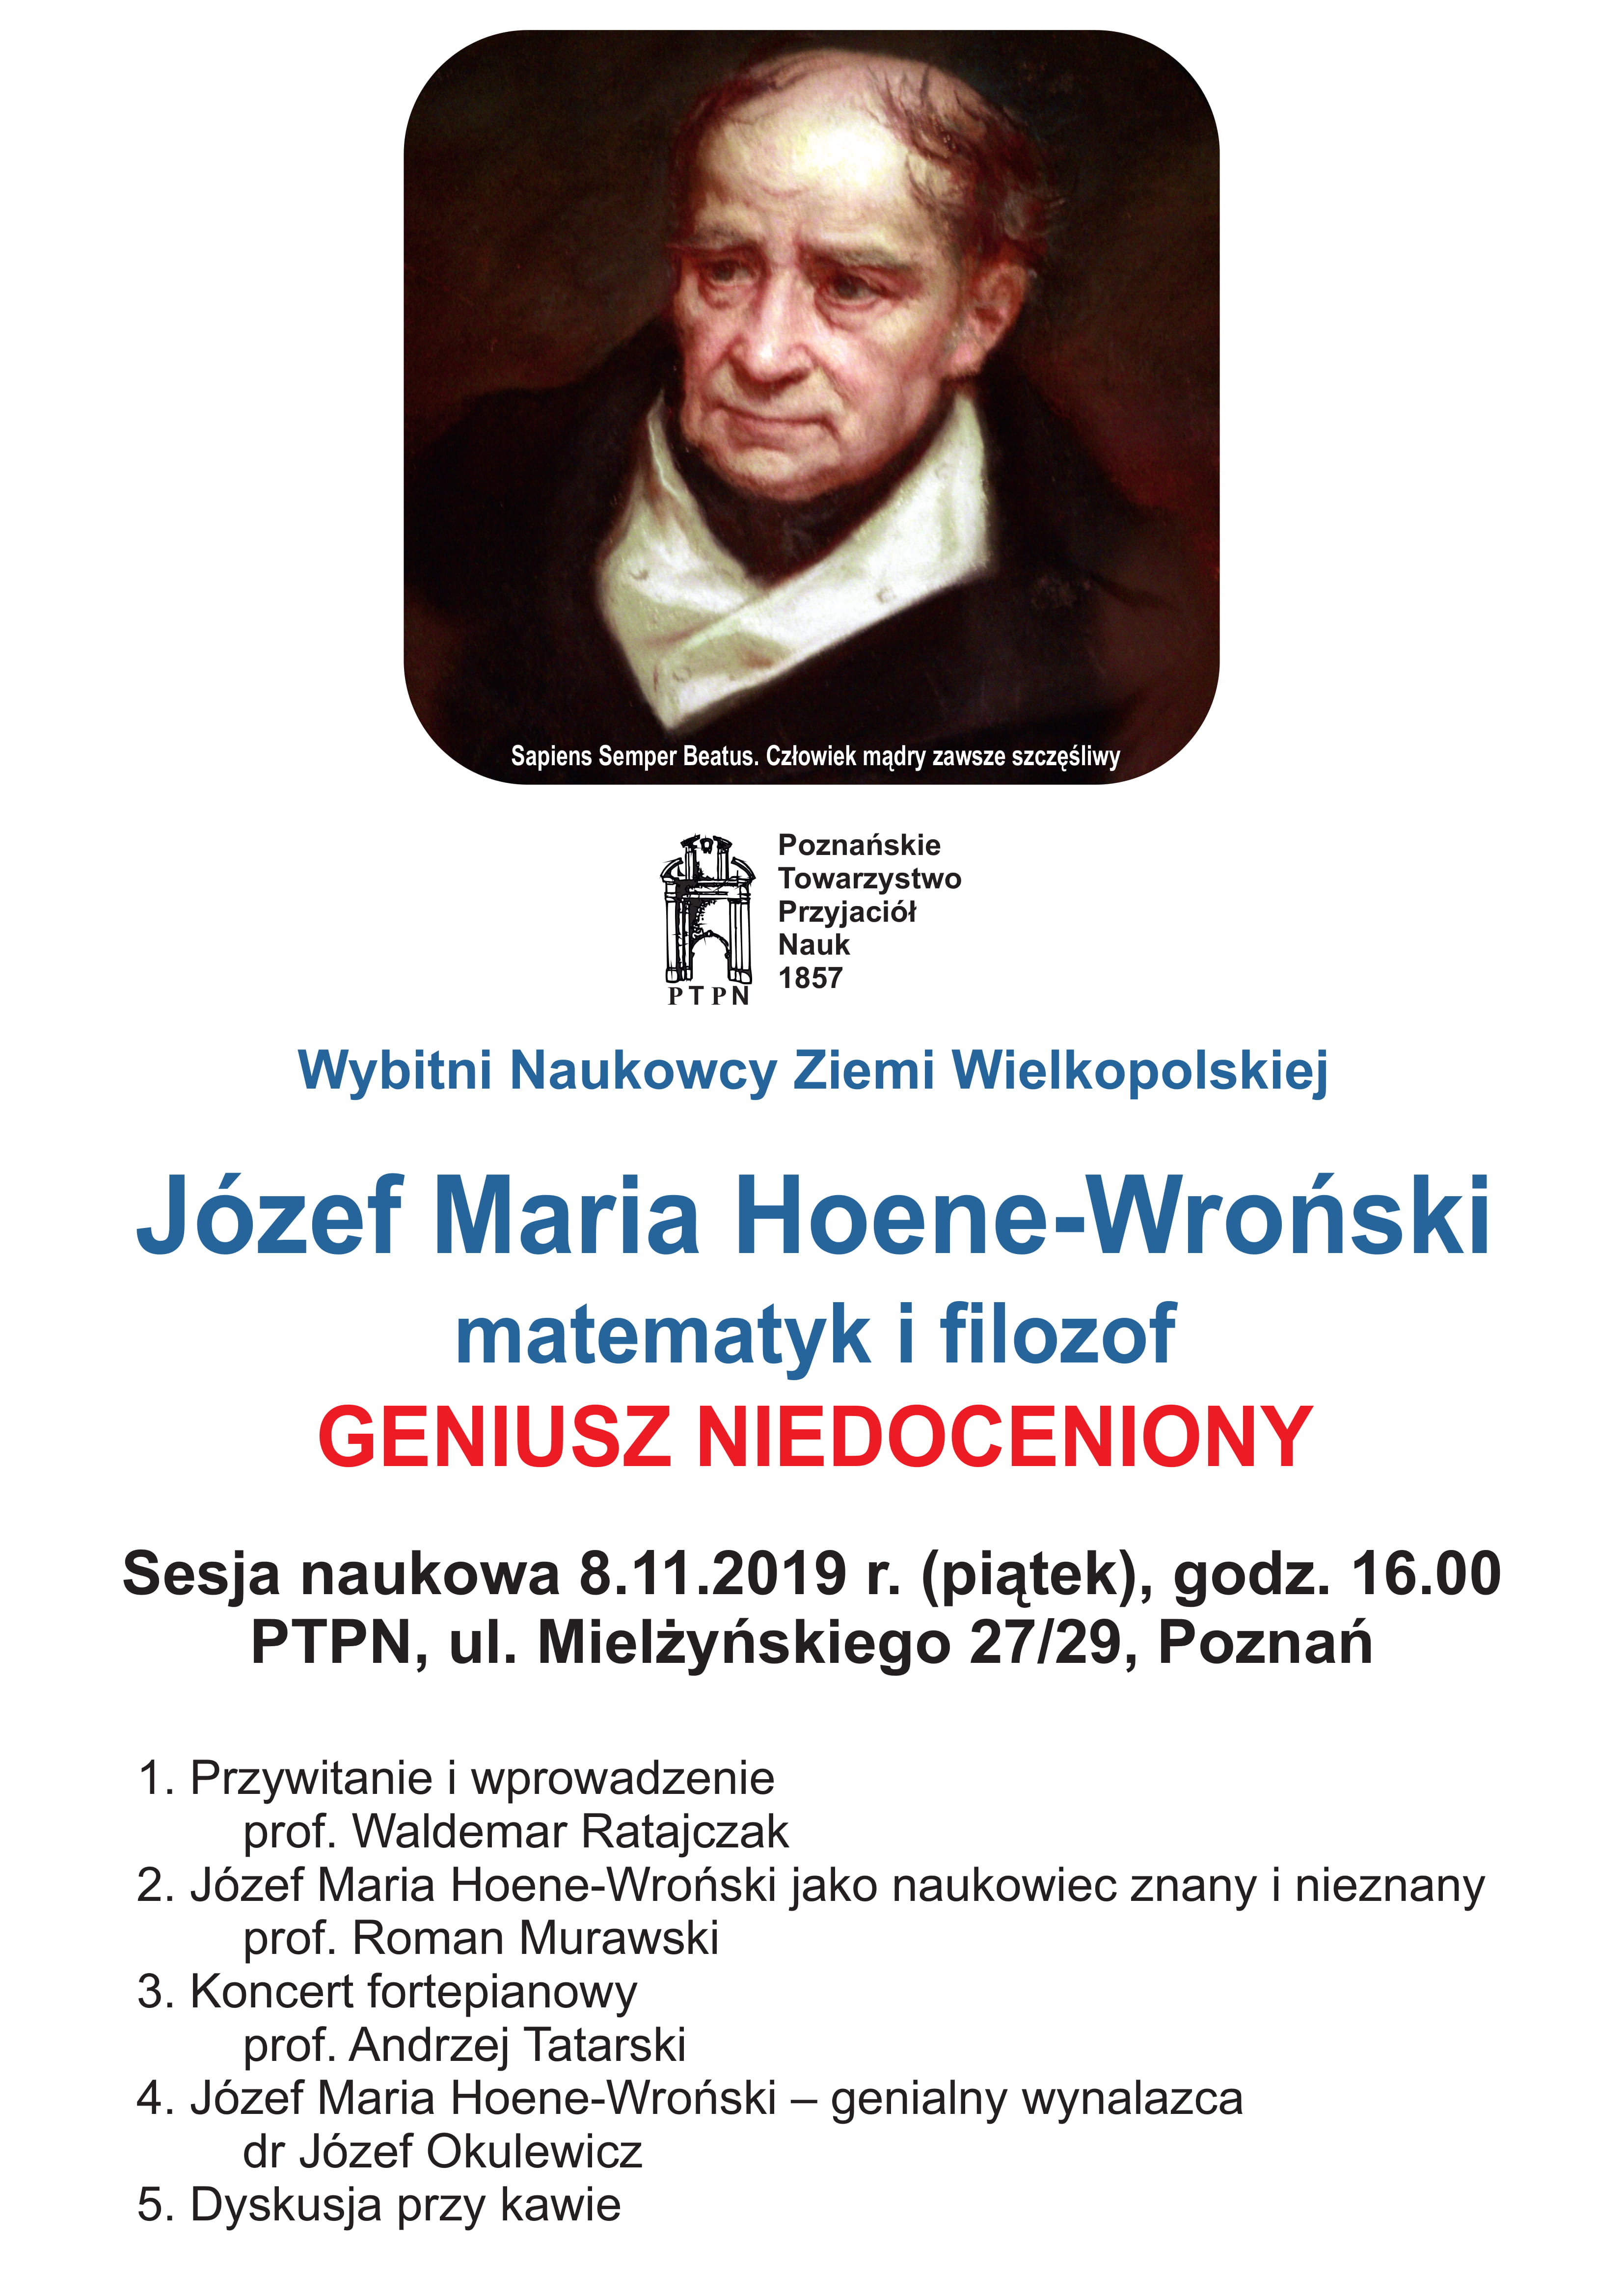 Józef Maria Hoene-Wroński – matematyk i filozof, geniusz niedoceniony